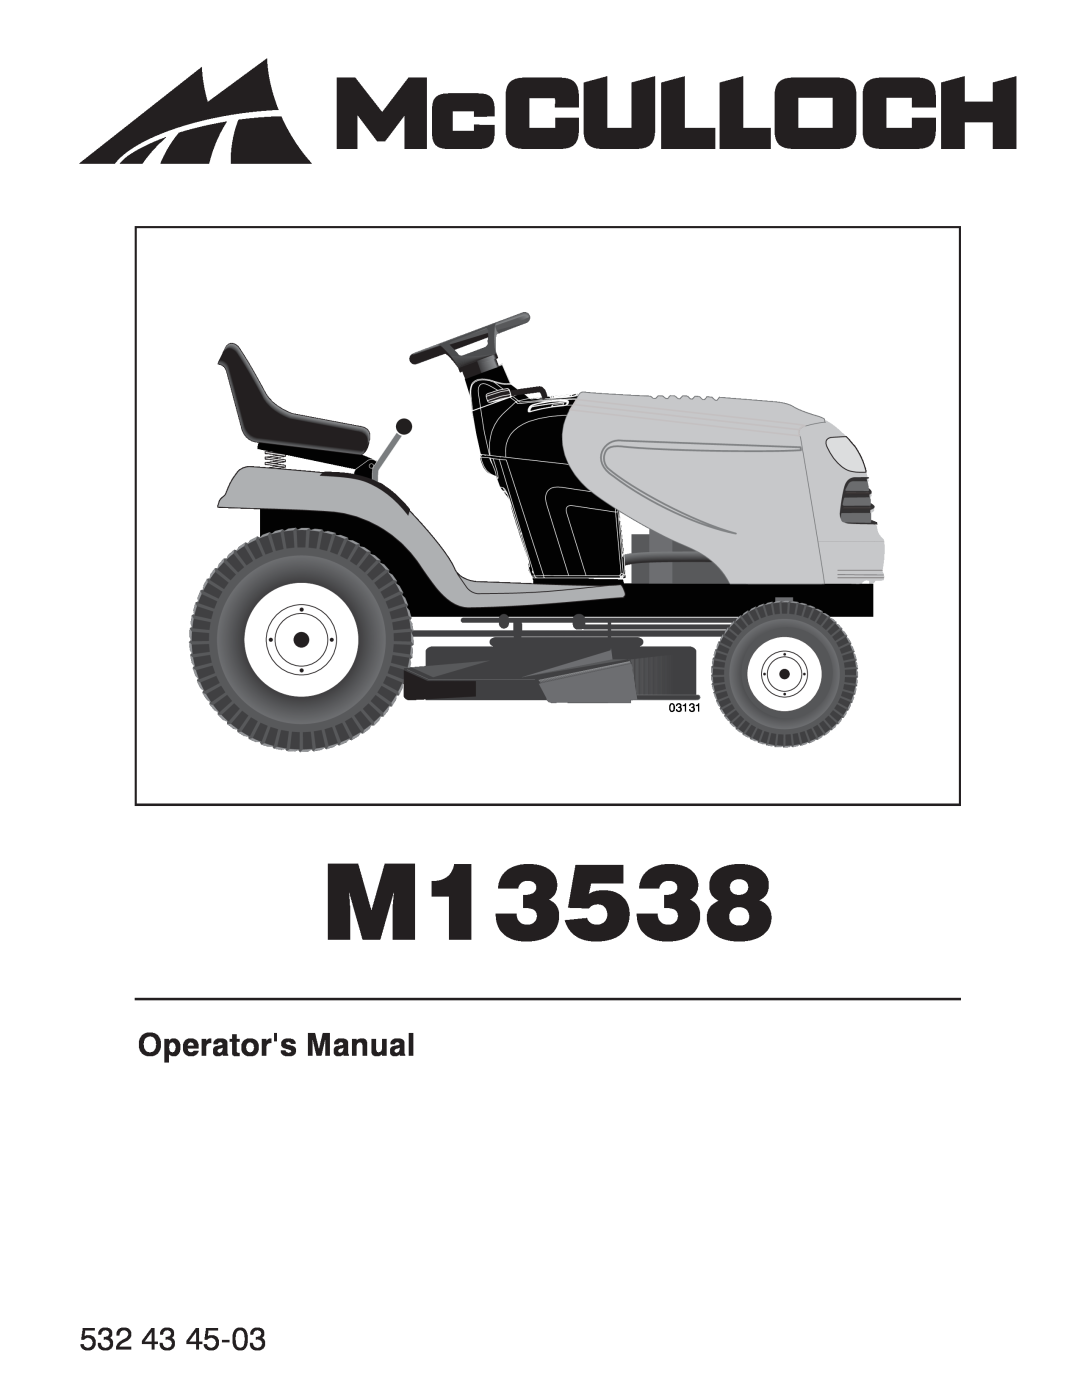 McCulloch 532 43 45-03, 96041017700 manual Operators Manual, M13538, 03131 